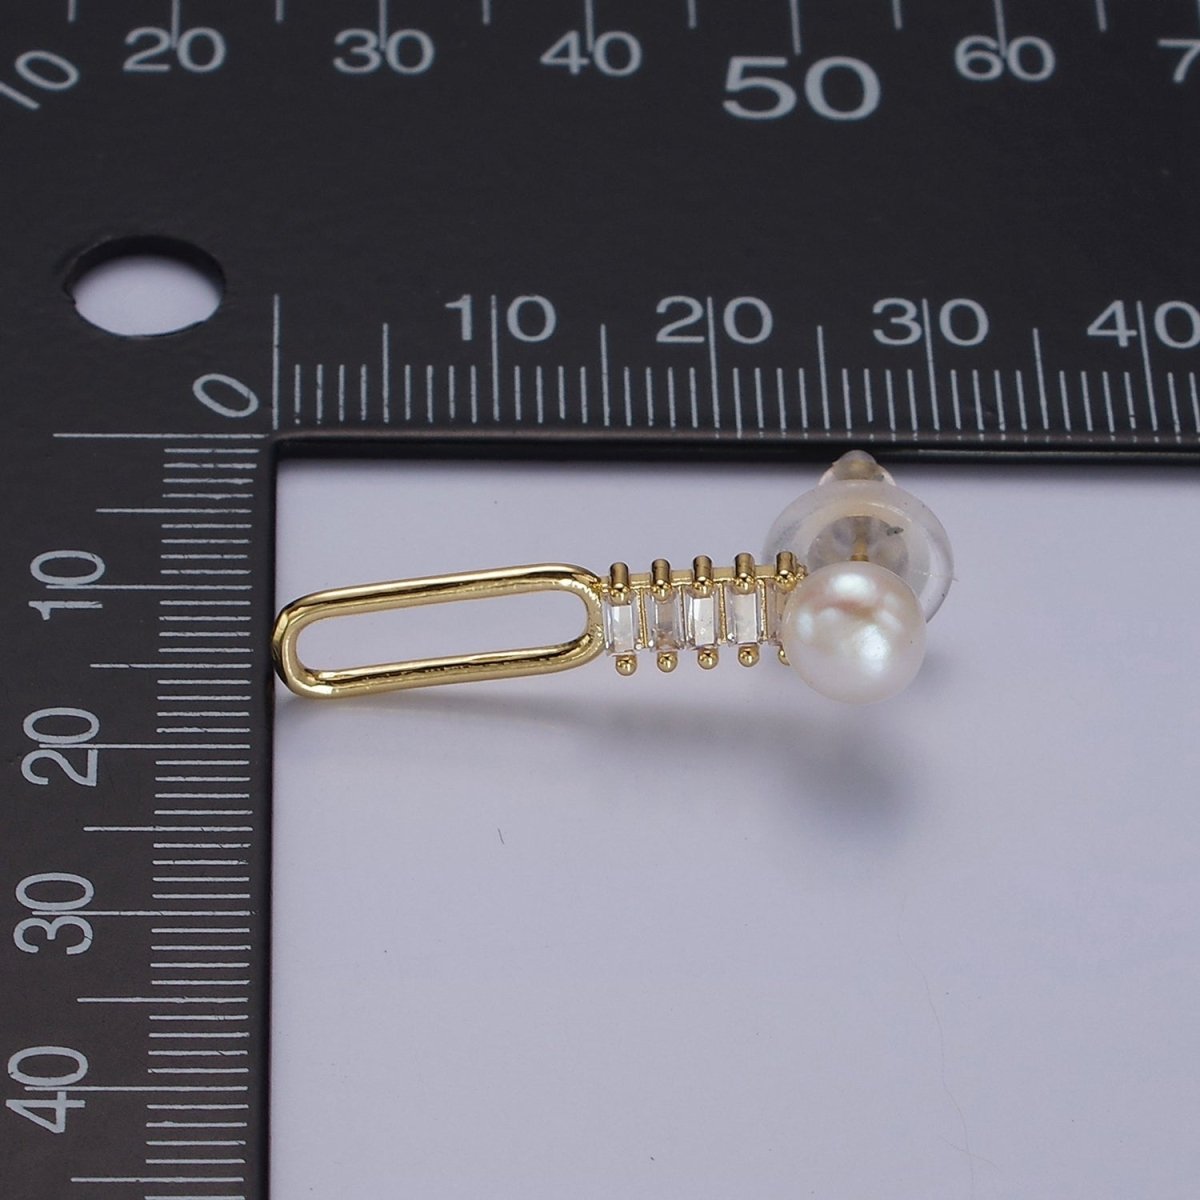 14K Gold Filled 28mm Open Oblong Clear Baguette Lined Pearl Drop Stud Earrings | AE749 - DLUXCA